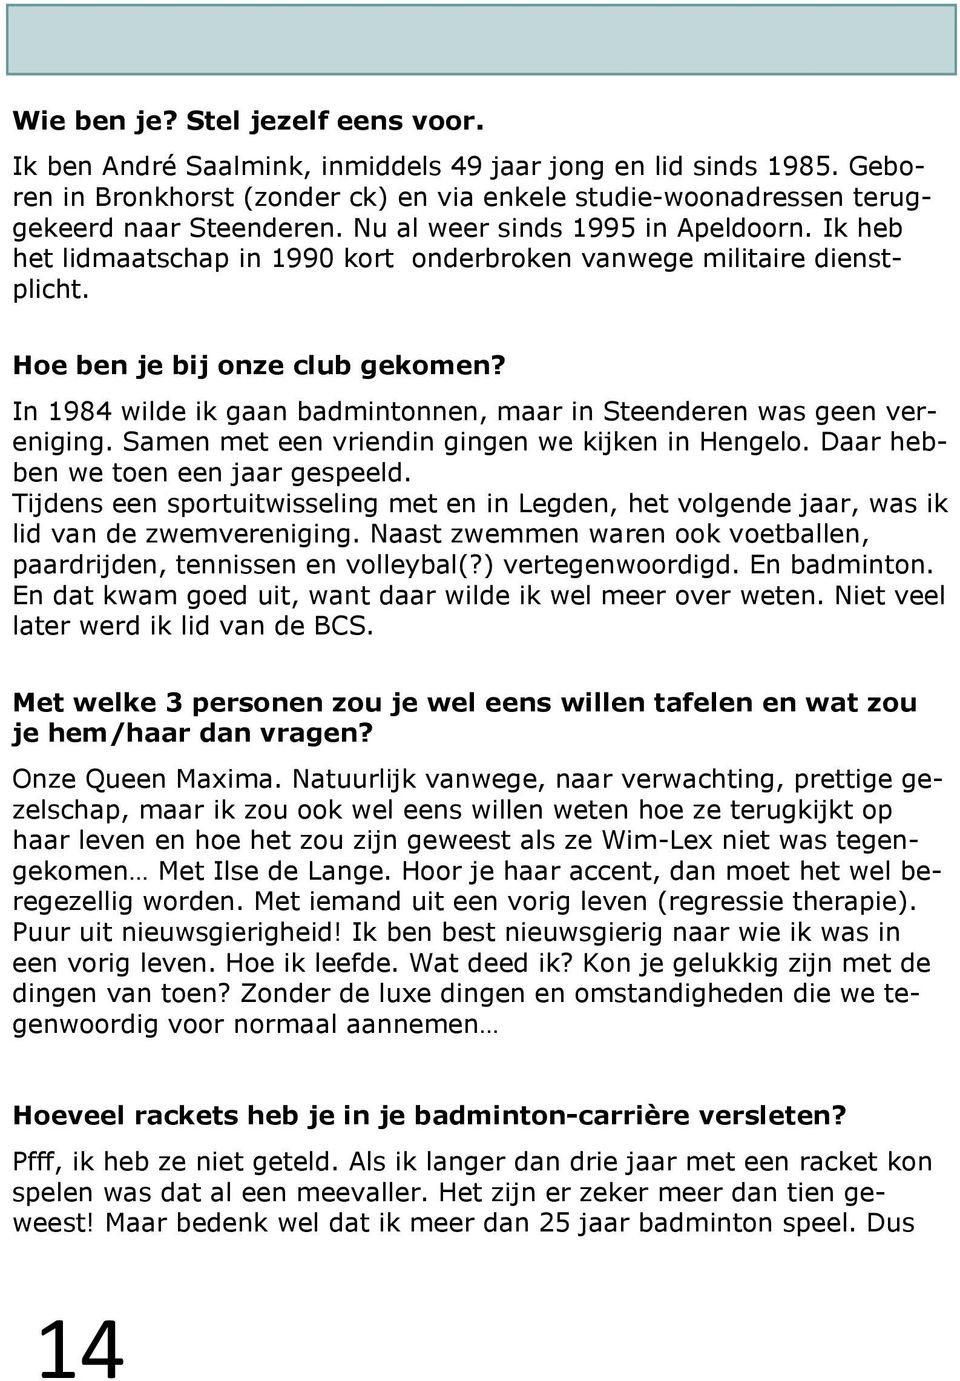 In 1984 wilde ik gaan badmintonnen, maar in Steenderen was geen vereniging. Samen met een vriendin gingen we kijken in Hengelo. Daar hebben we toen een jaar gespeeld.